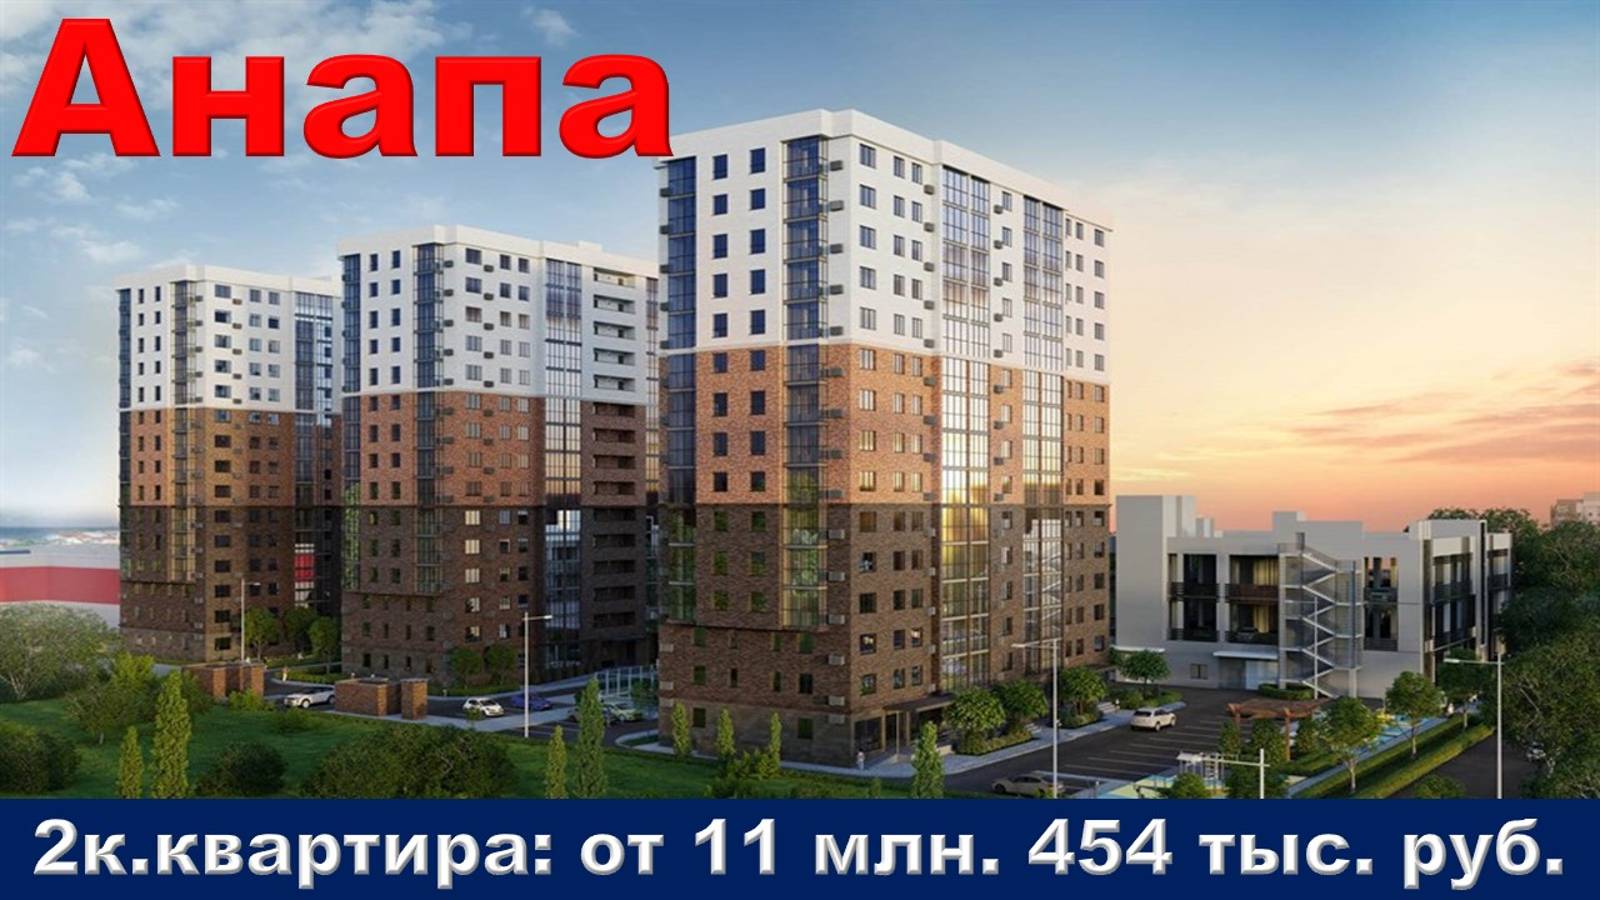 Анапа. 2к. квартира от 11 млн. 454 тыс. руб.